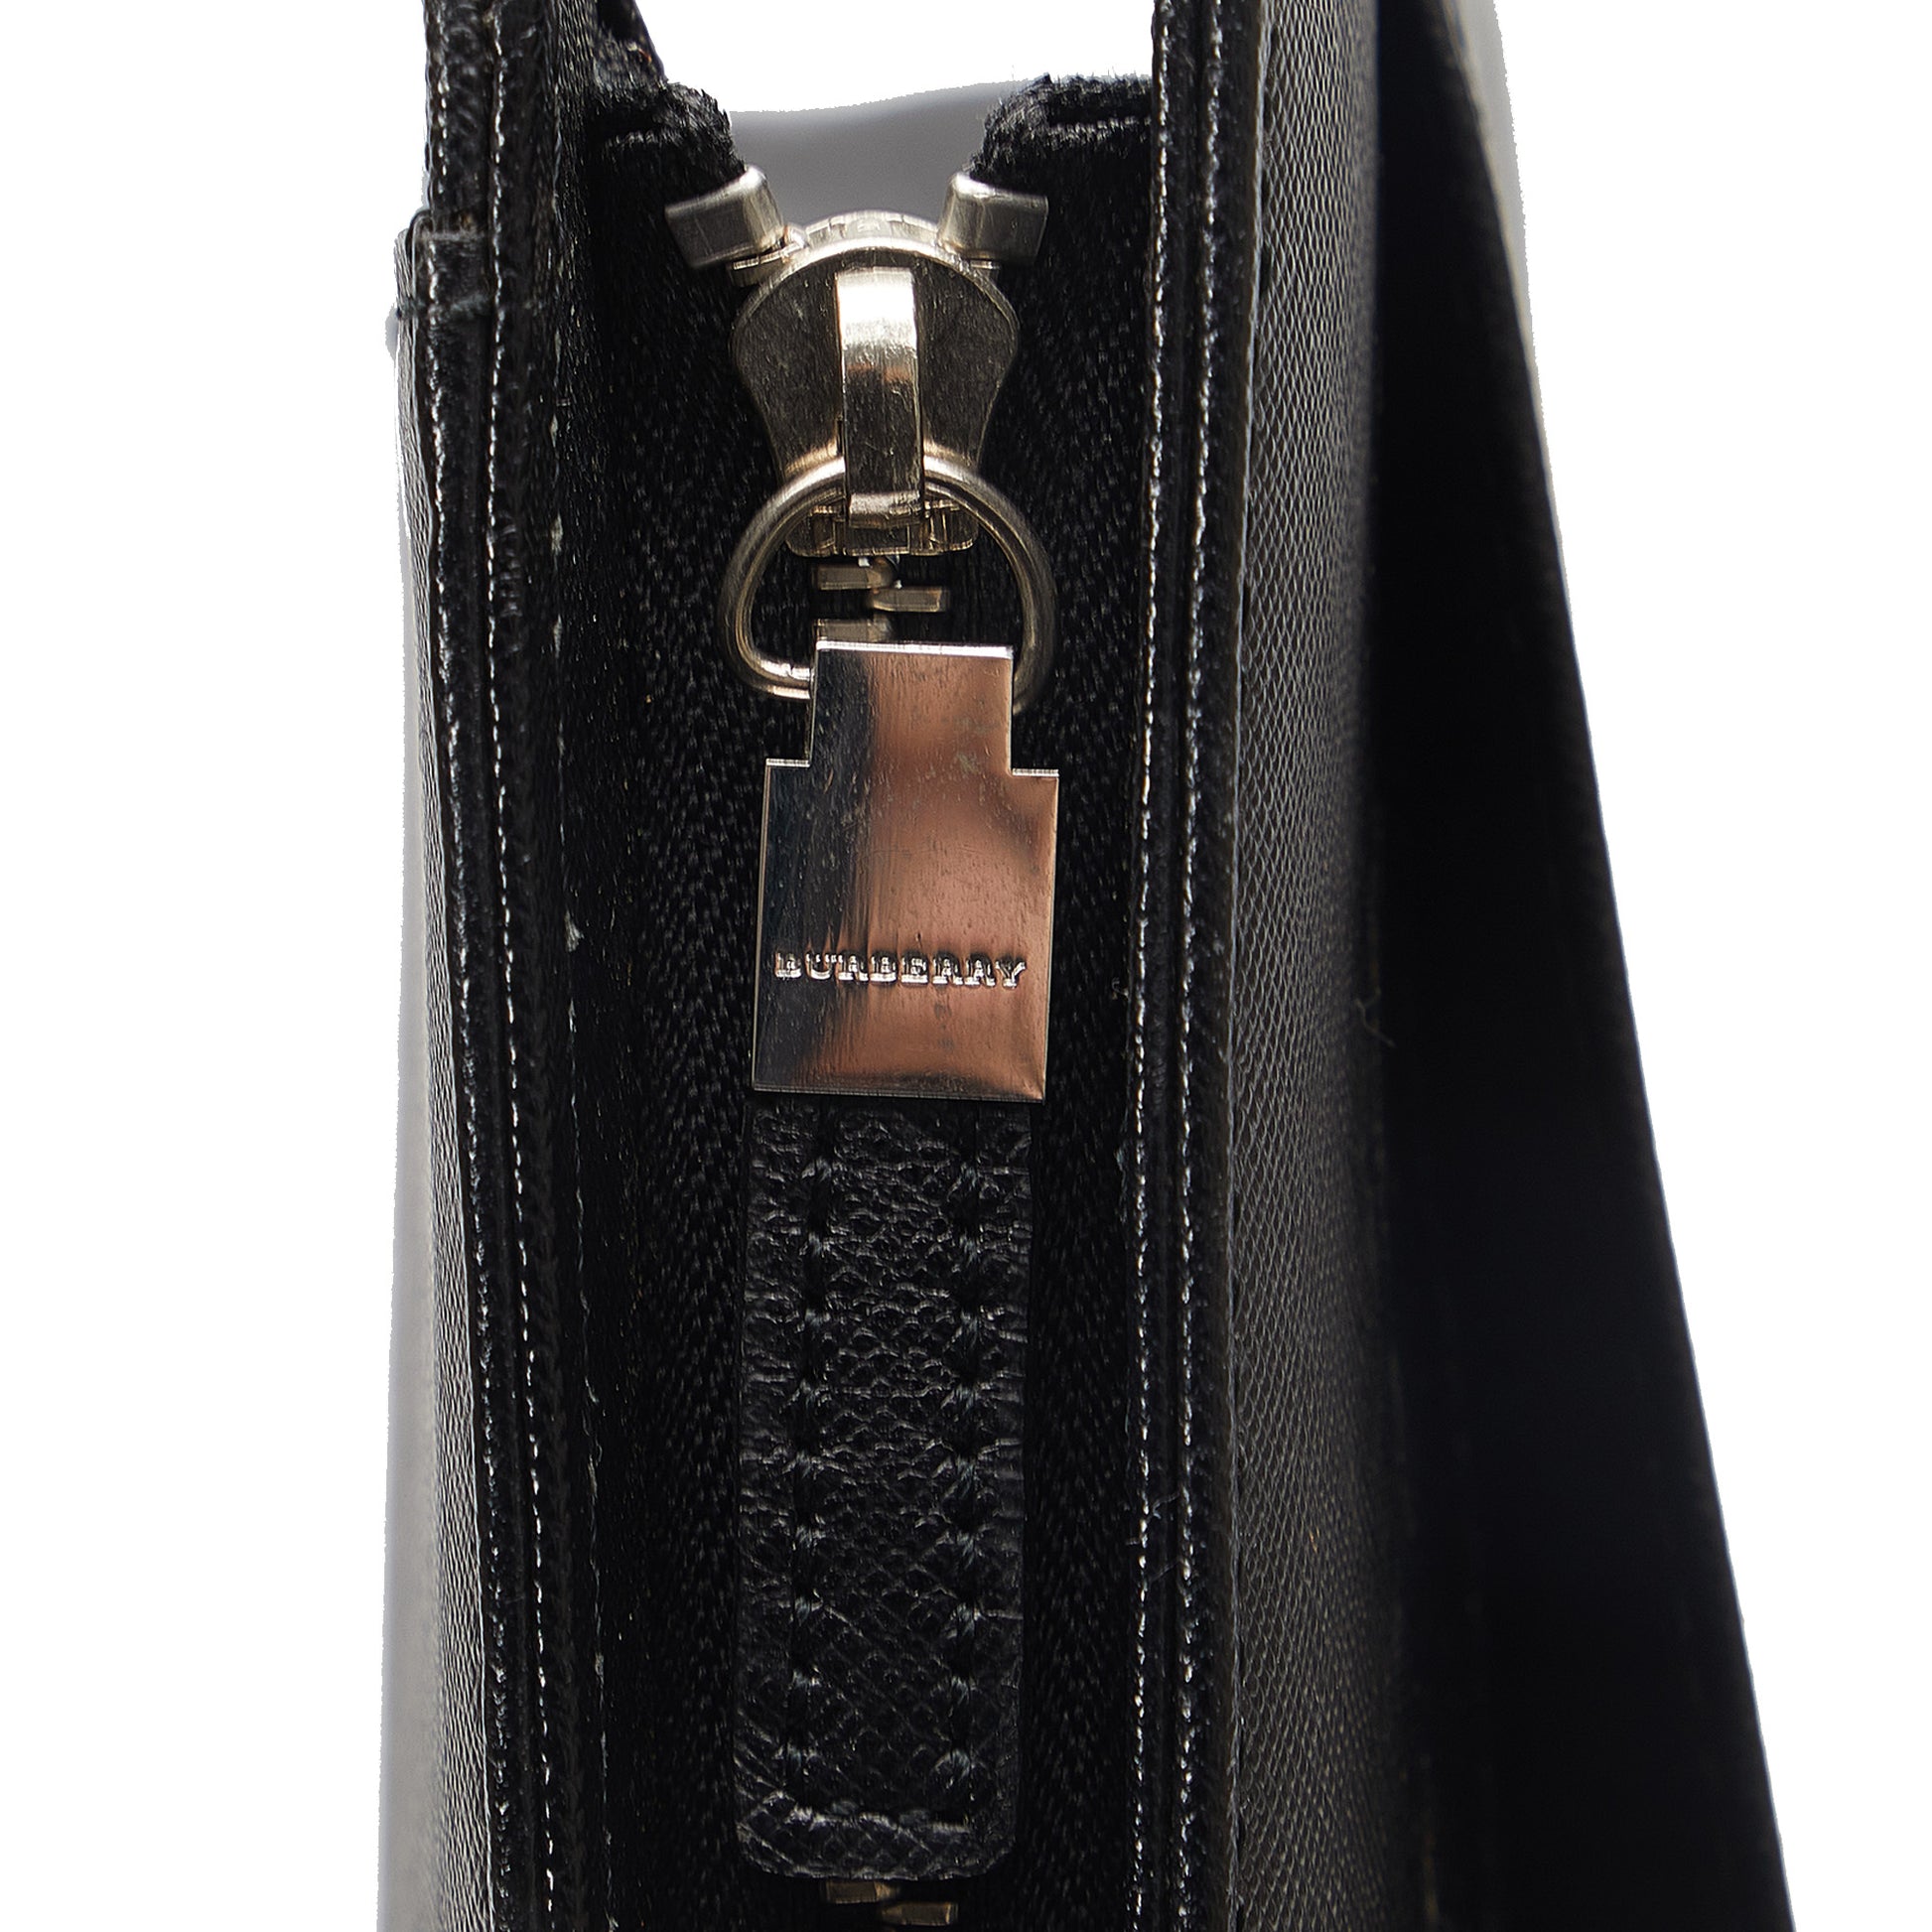 Leather Business Bag Black - Gaby Paris